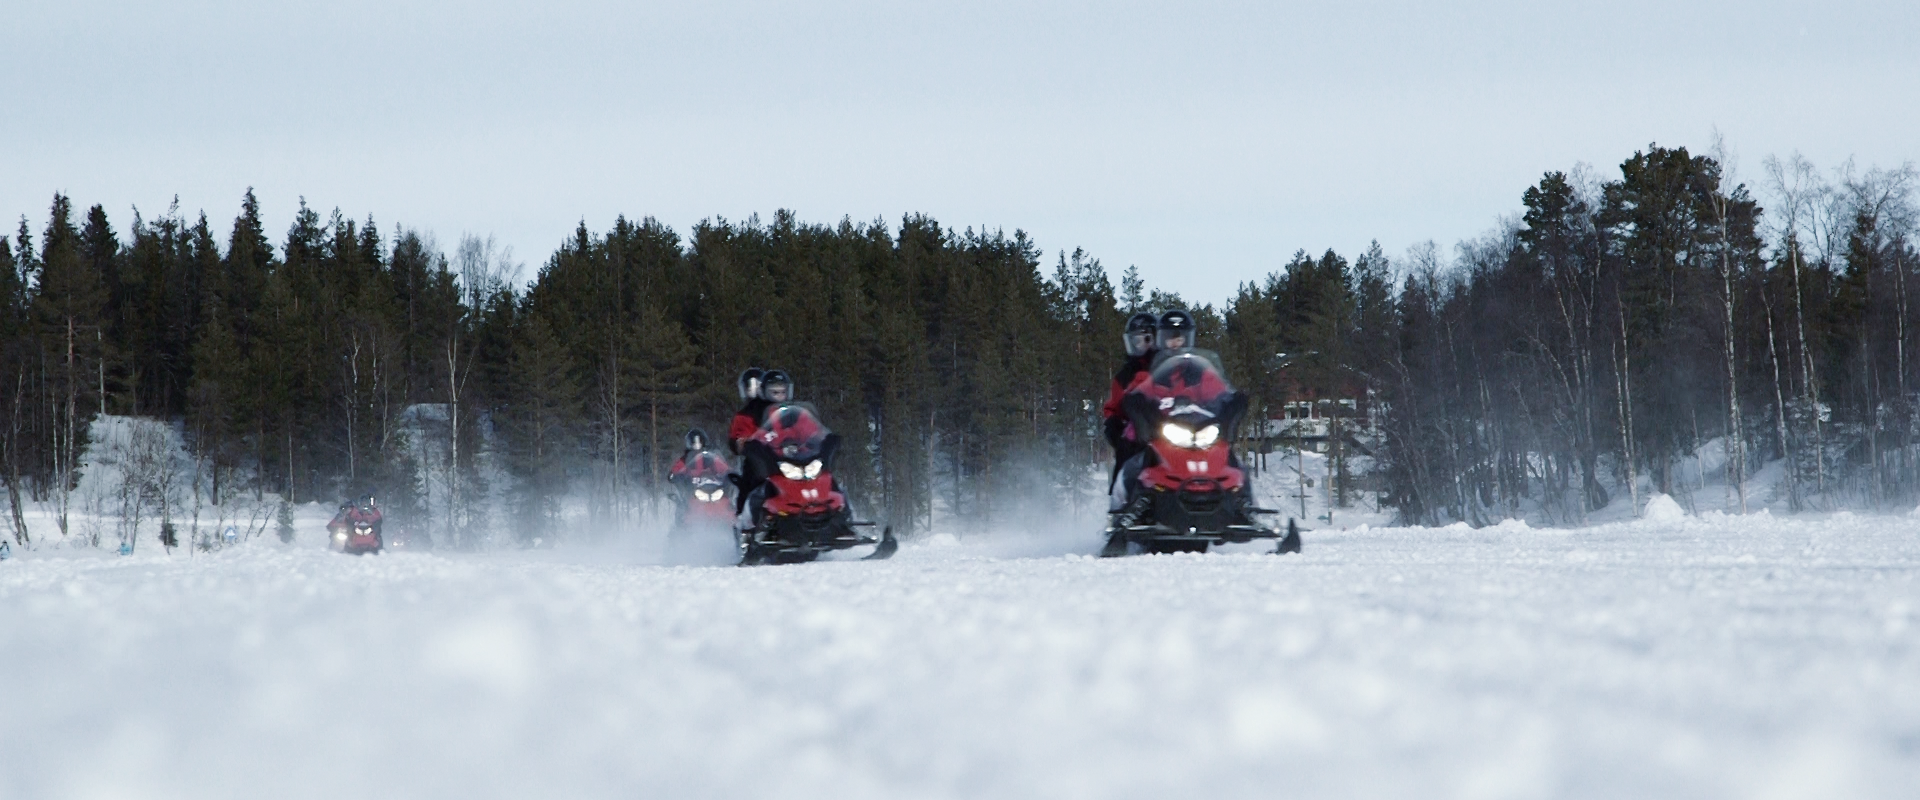 Lapland Film Experience – Dag 3 & 4